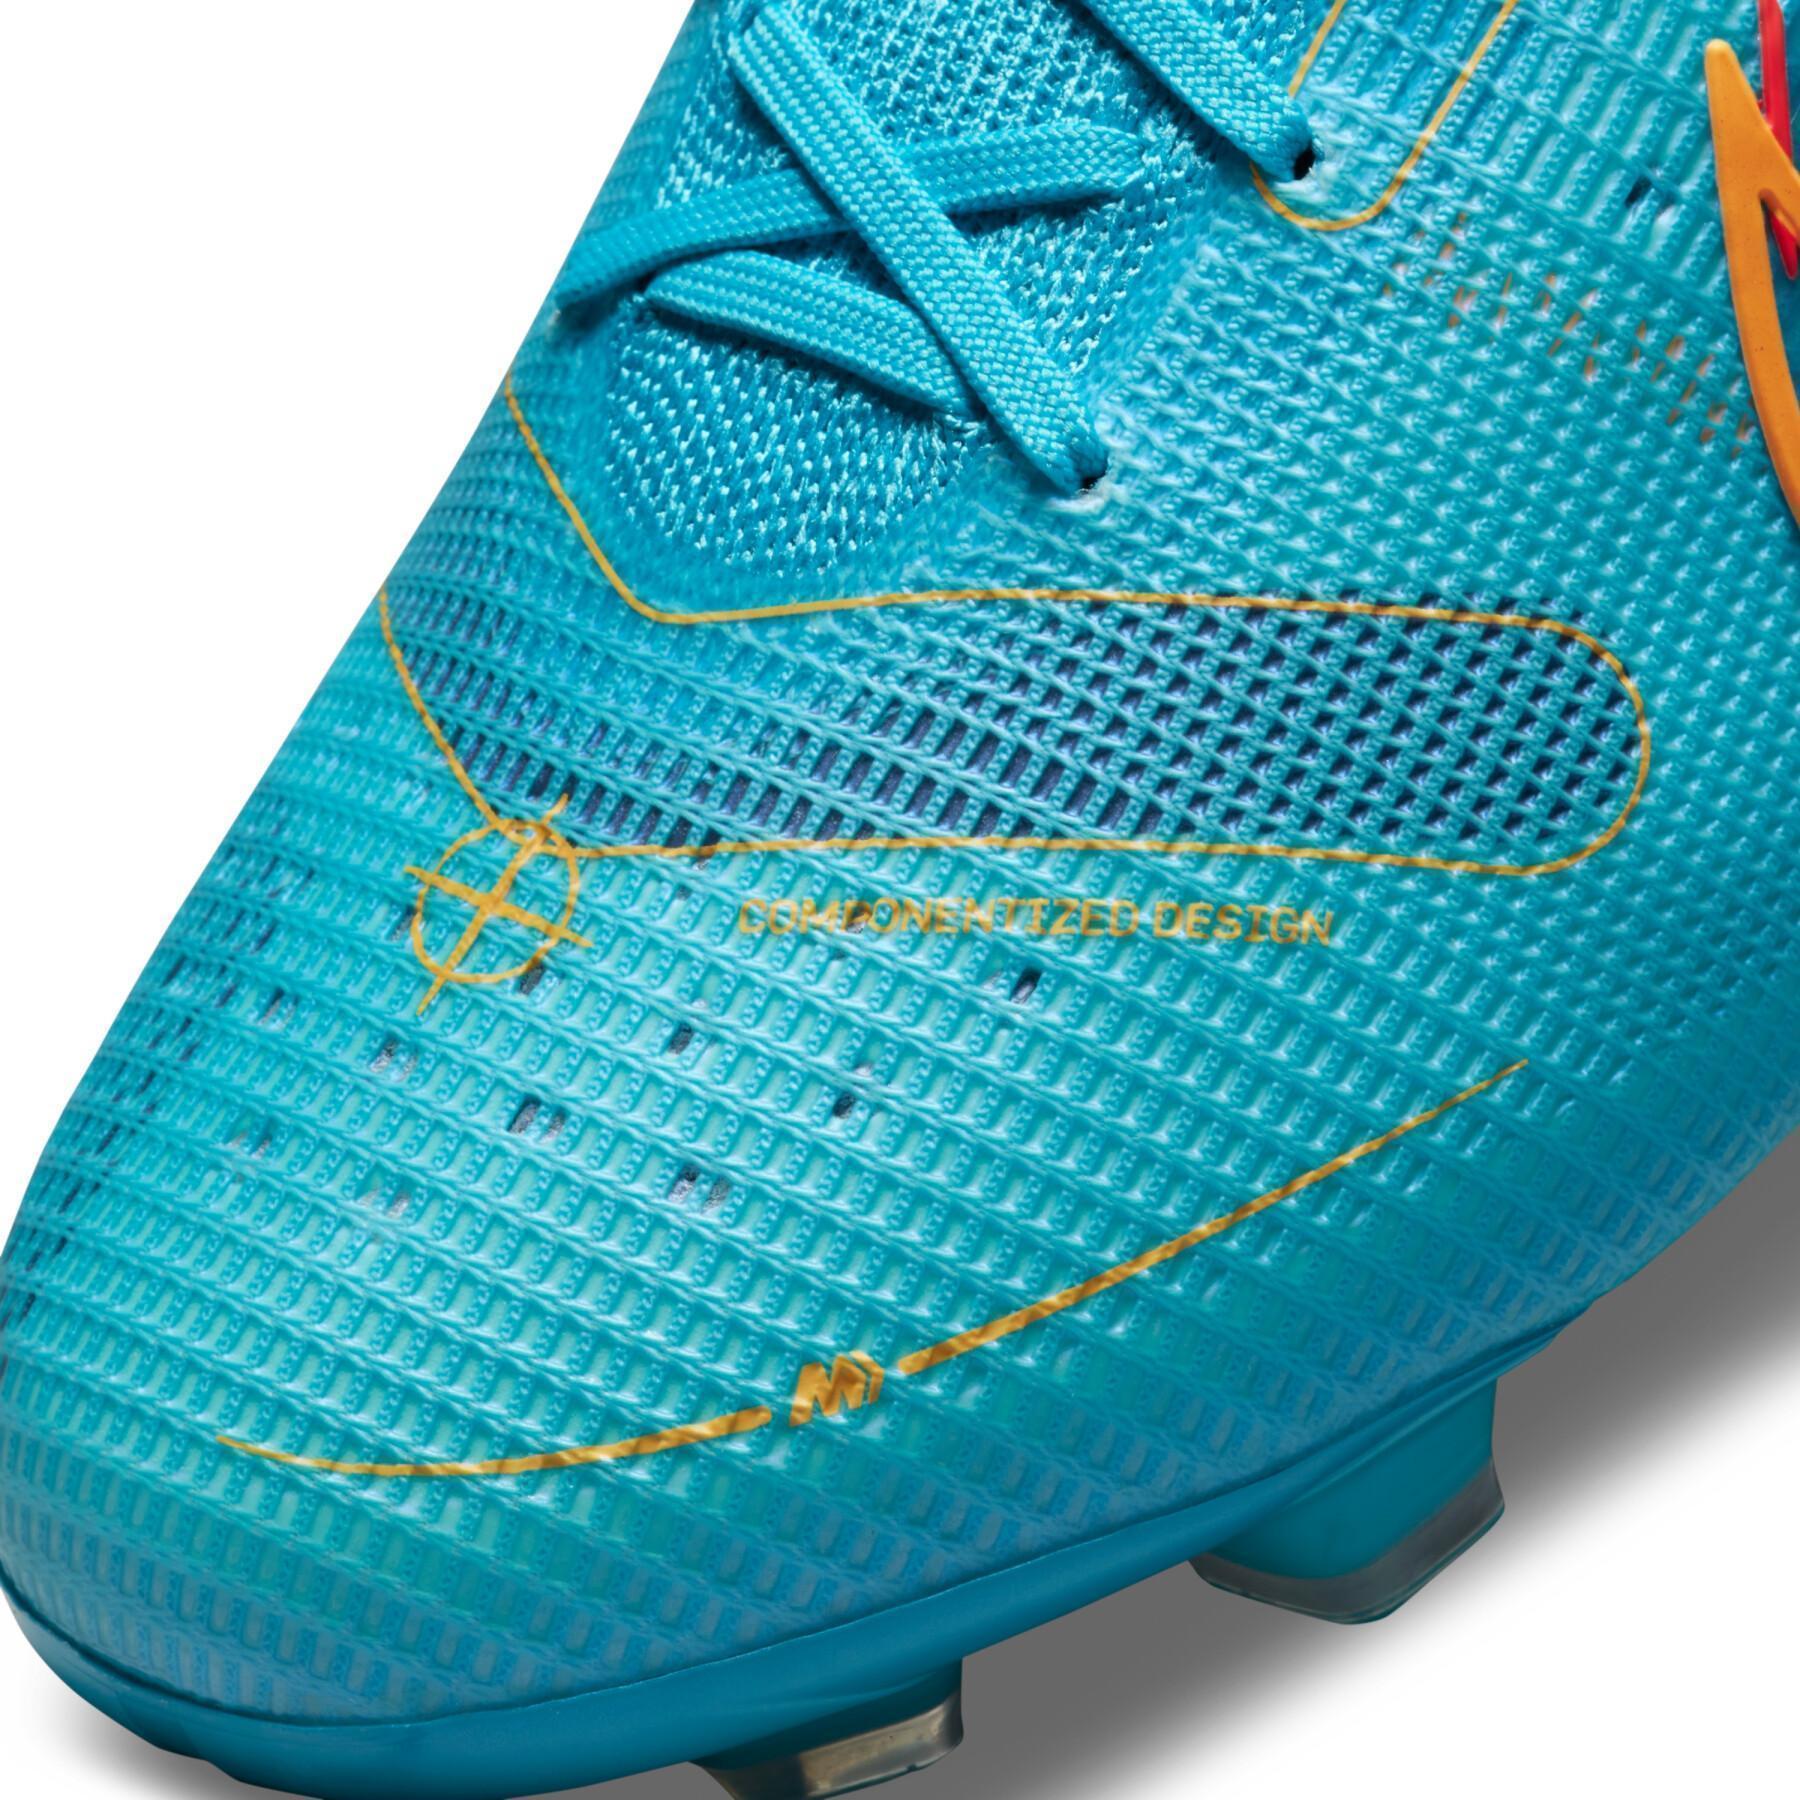 Chaussures de football Nike Mercurial Superfly 8 Élite FG -Blueprint Pack